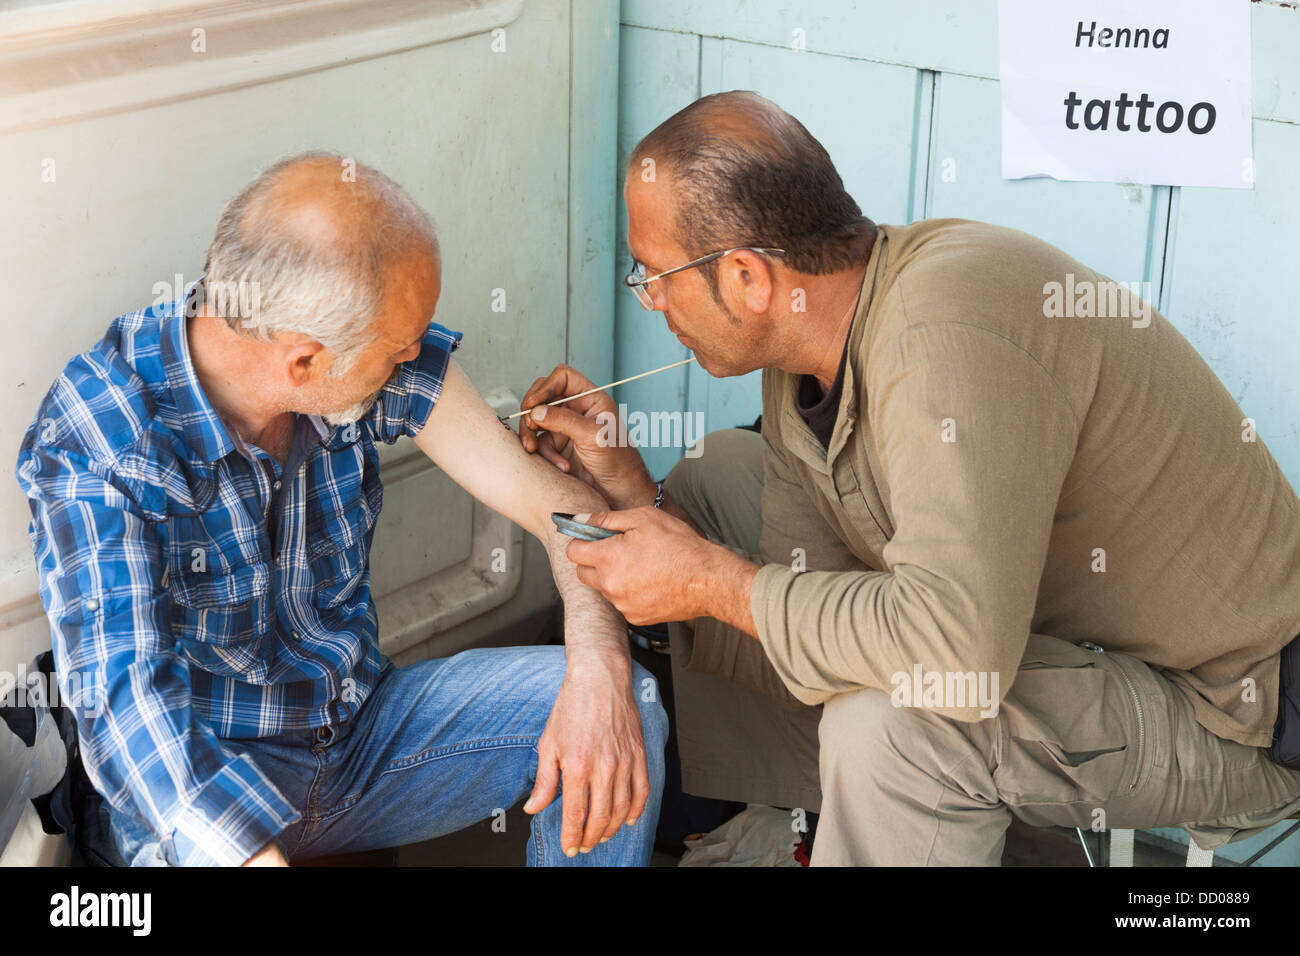 Mann hat eine Henna-Tattoo tätowiert auf seinem Arm, Istanbul, Türkei Stockfoto